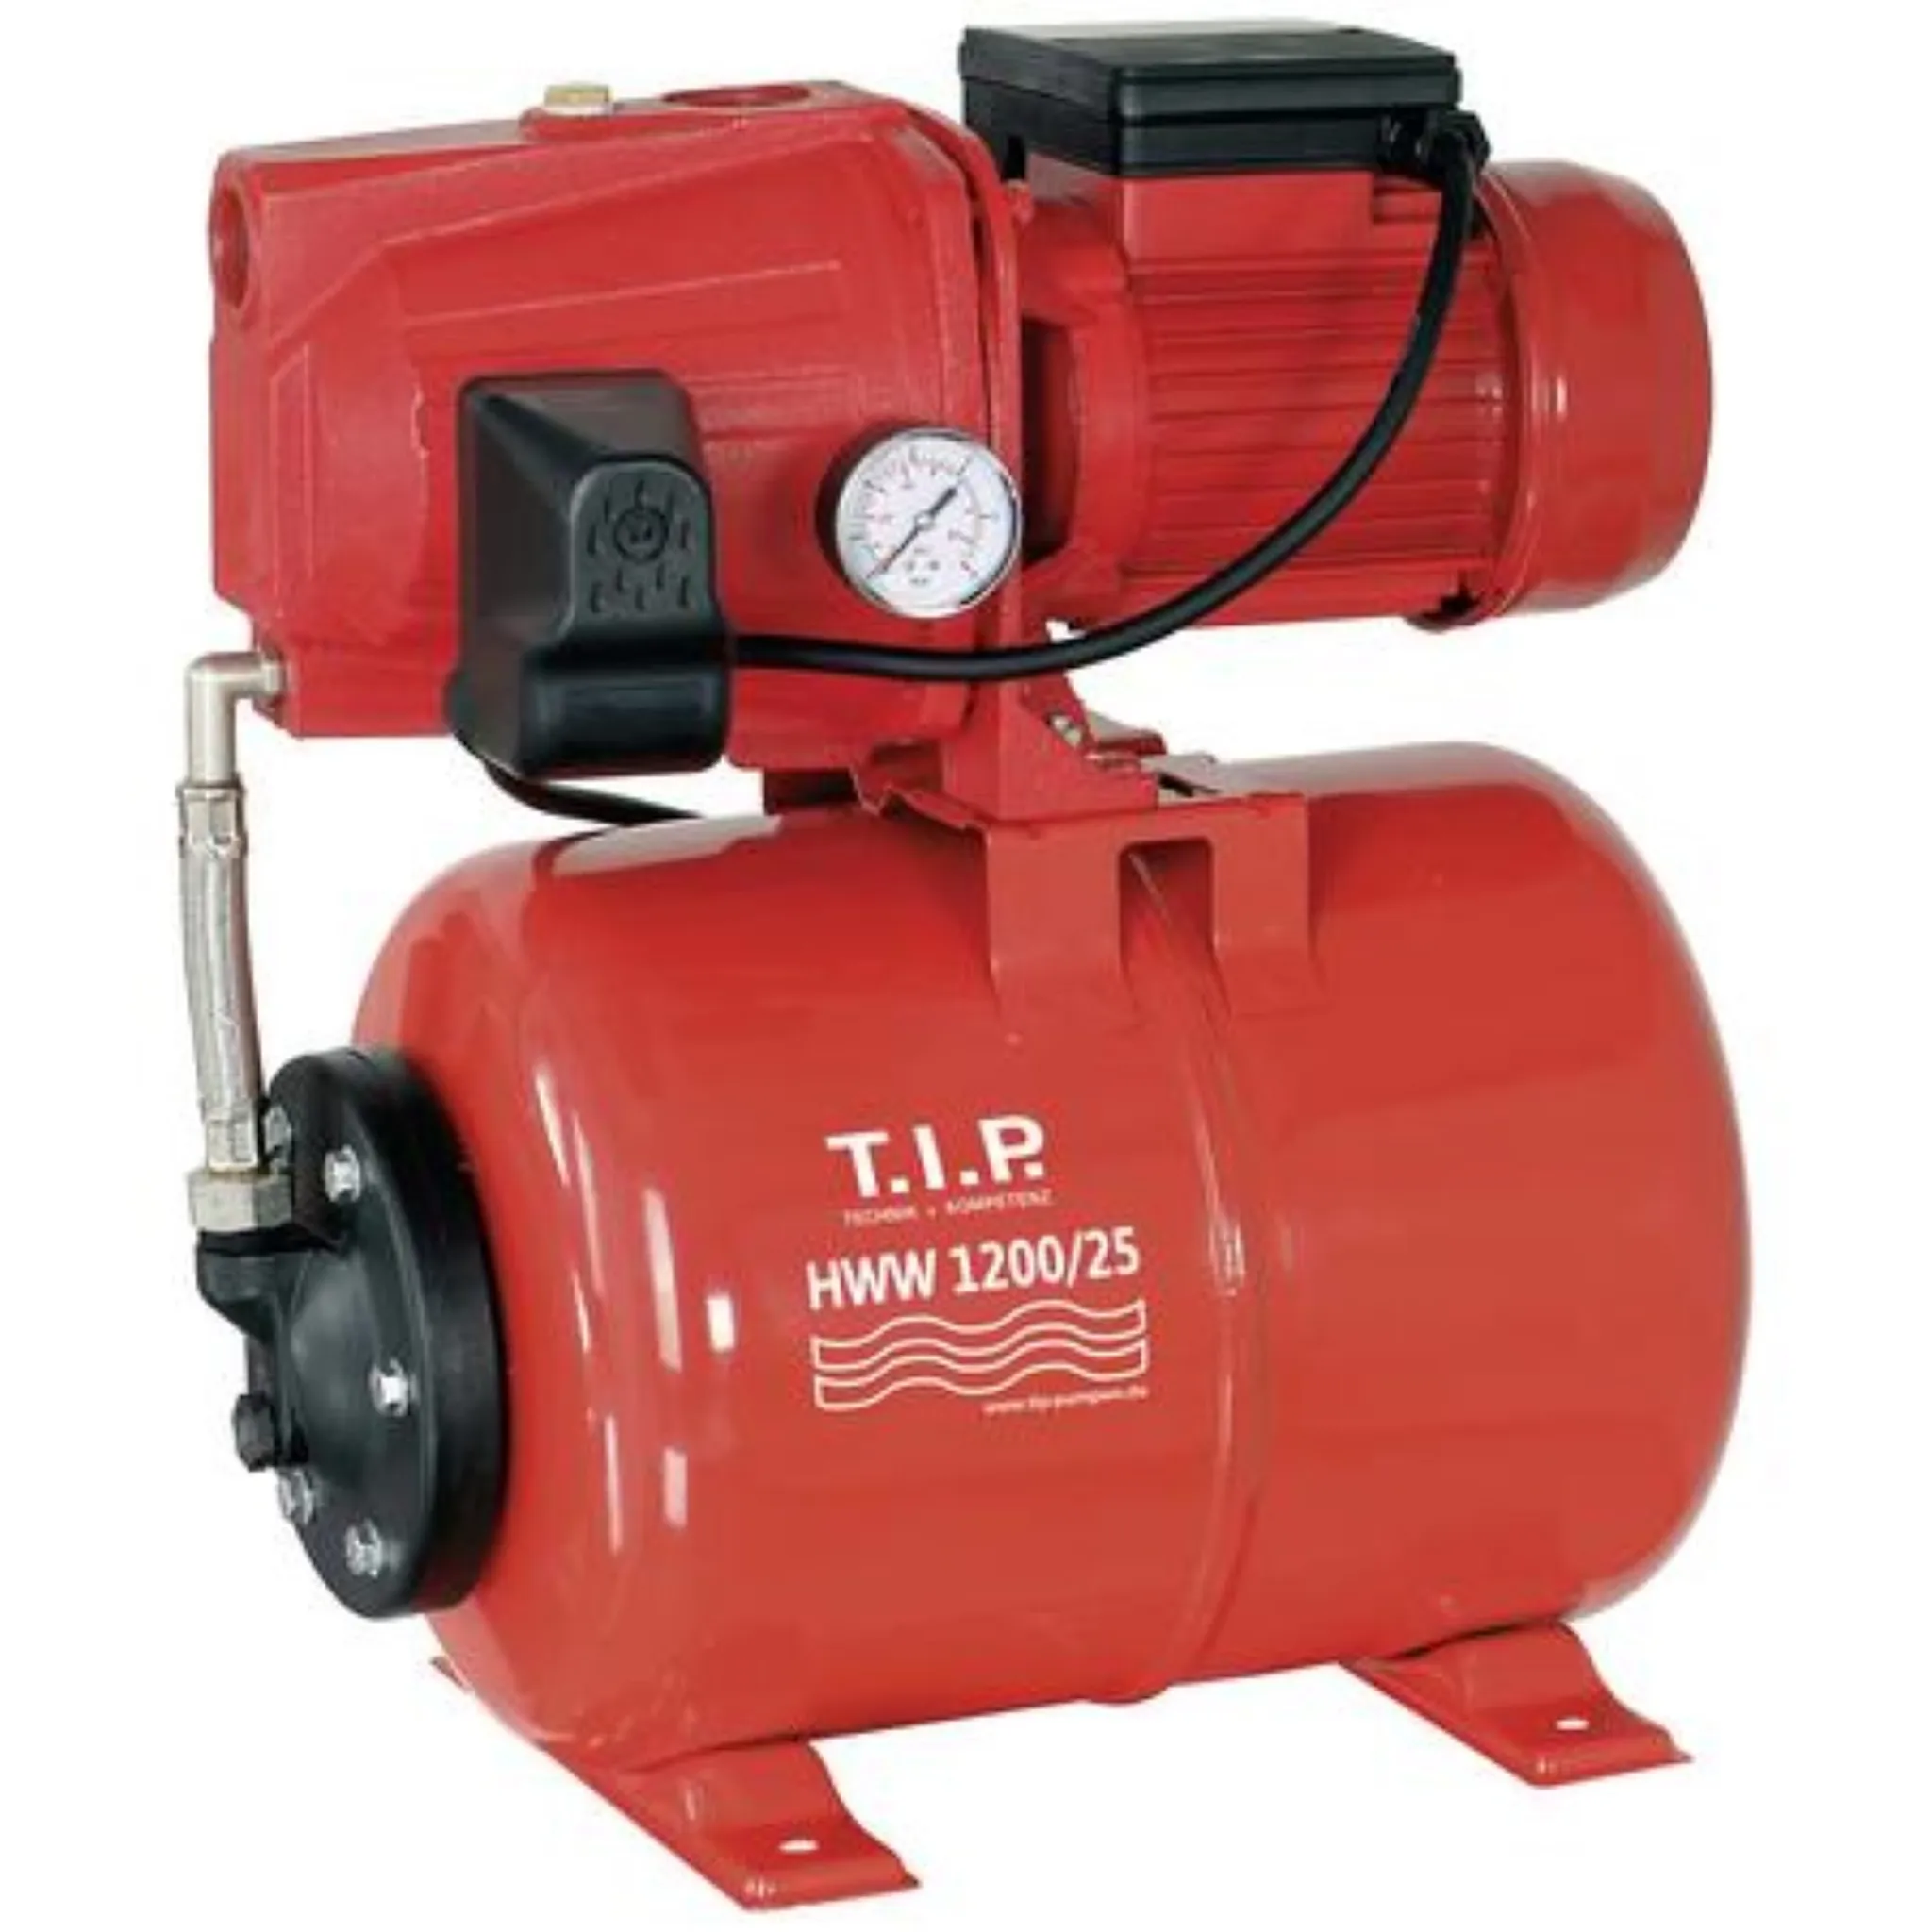 Hauswasserwerk T.I.P Jet 1000 Plus Pumpe und 22 Liter Druckkessel